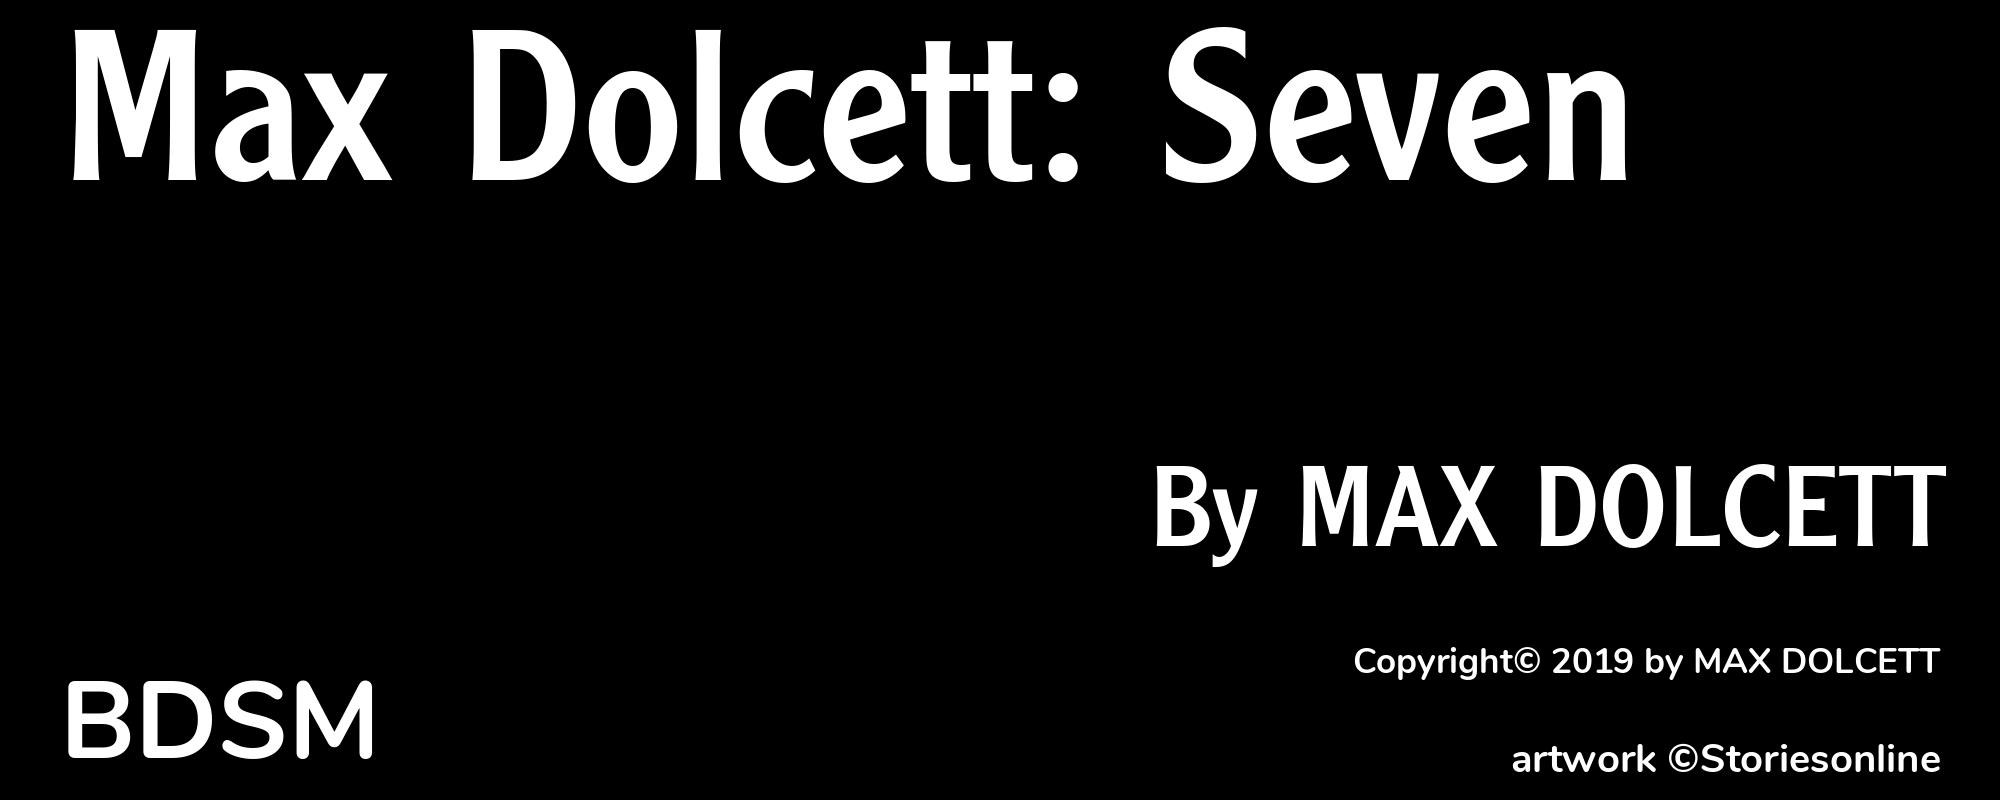 Max Dolcett: Seven - Cover